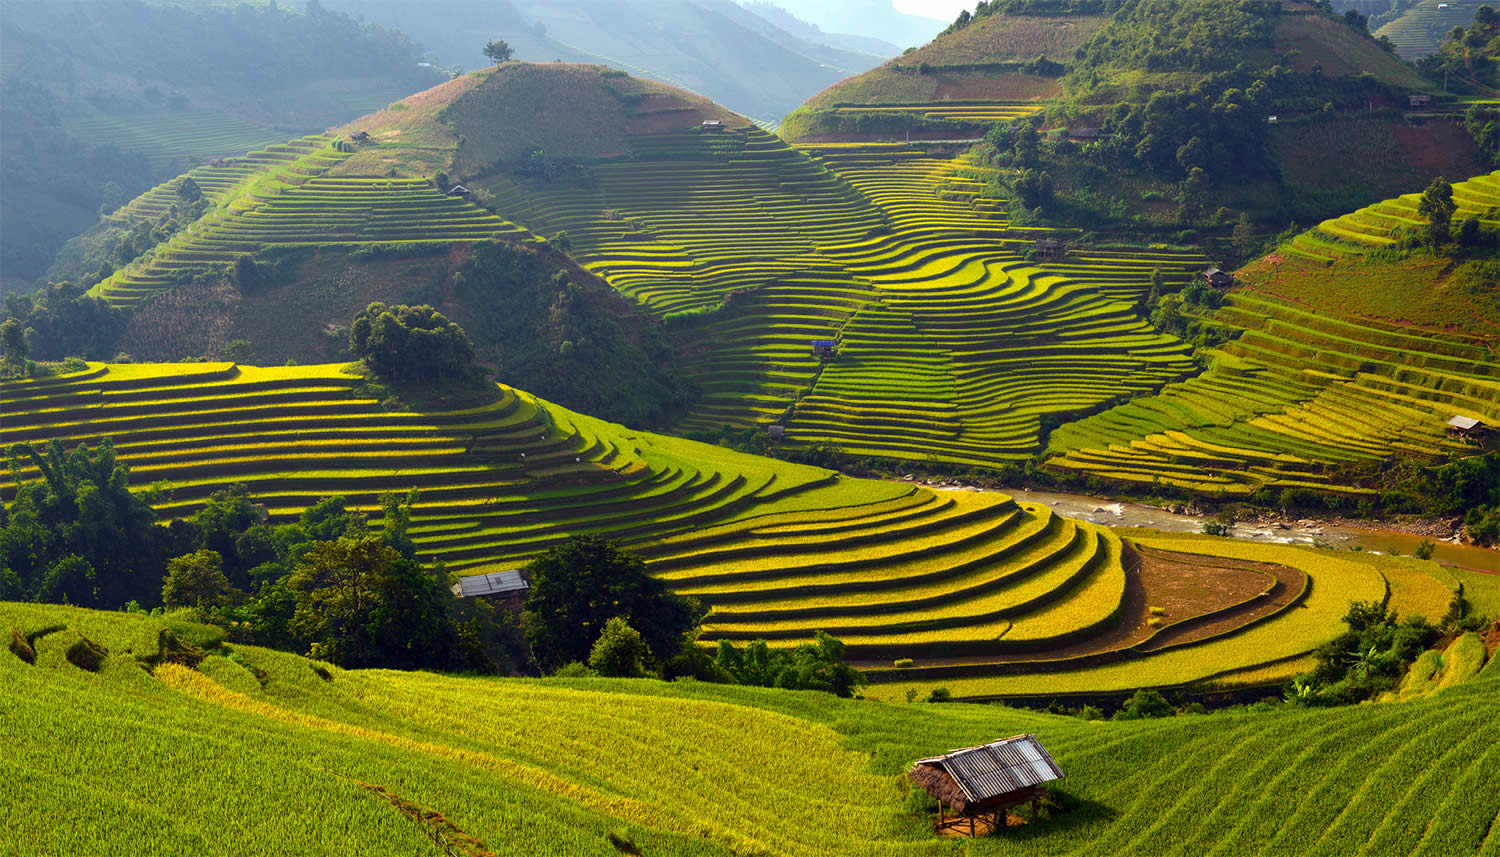 green rice terraces, paddy fields in vietnam